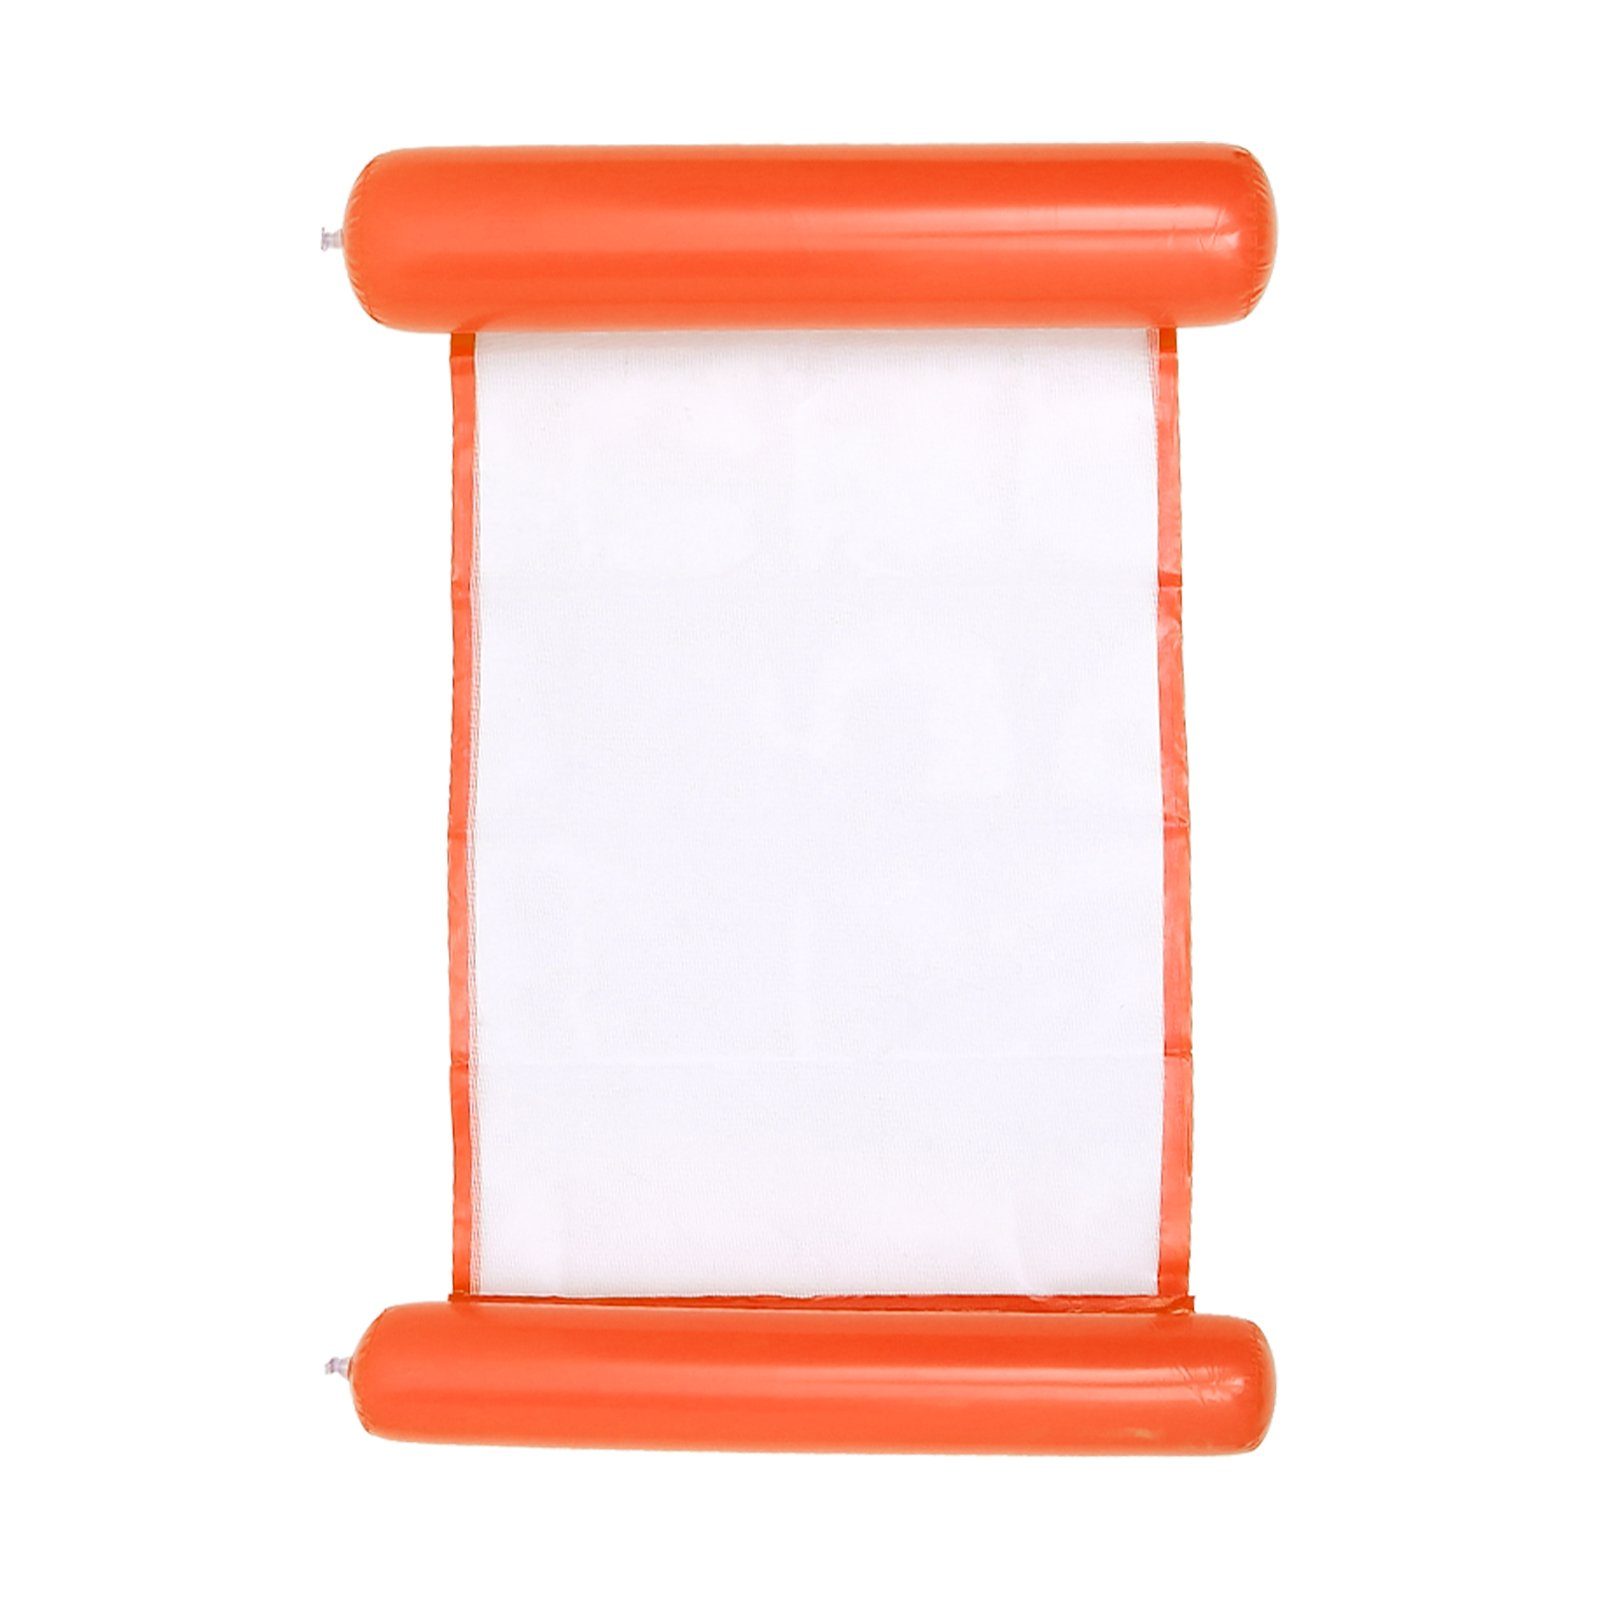 Clanmacy Schwimmreifen Wasserliege Aufblasbares Schwimmbett Wasser-Hängematte Loungesessel (Pool Lounge luftmatratze aufblasbare hängematte, aufblasbare hängematte für Erwachsene und Kinder) Orange